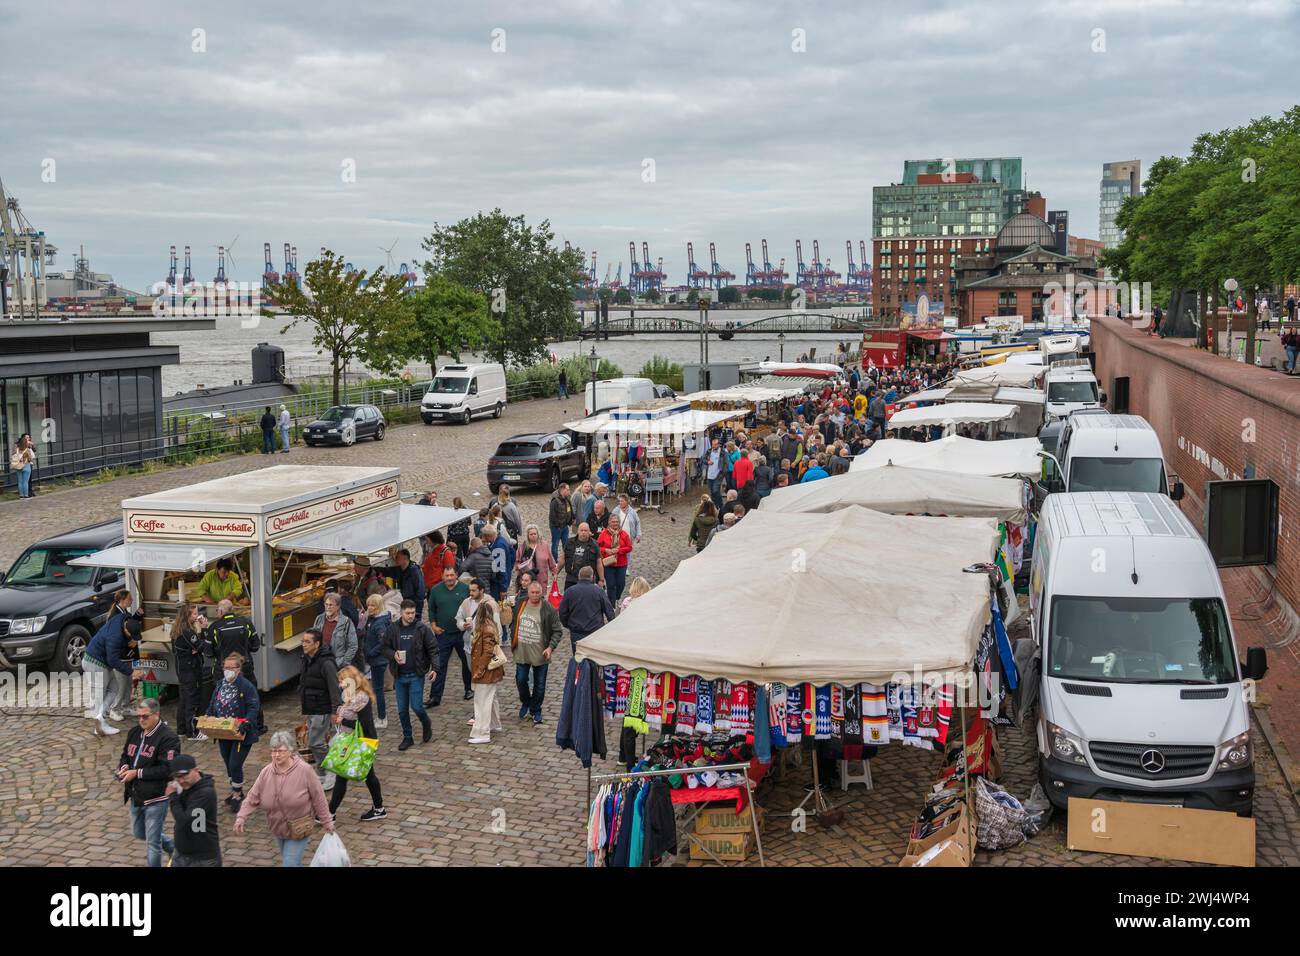 Hambourg, Allemagne - 17 juillet 2022 : horizon de la ville au célèbre marché aux poissons de Hambourg (Fischmarkt) Banque D'Images